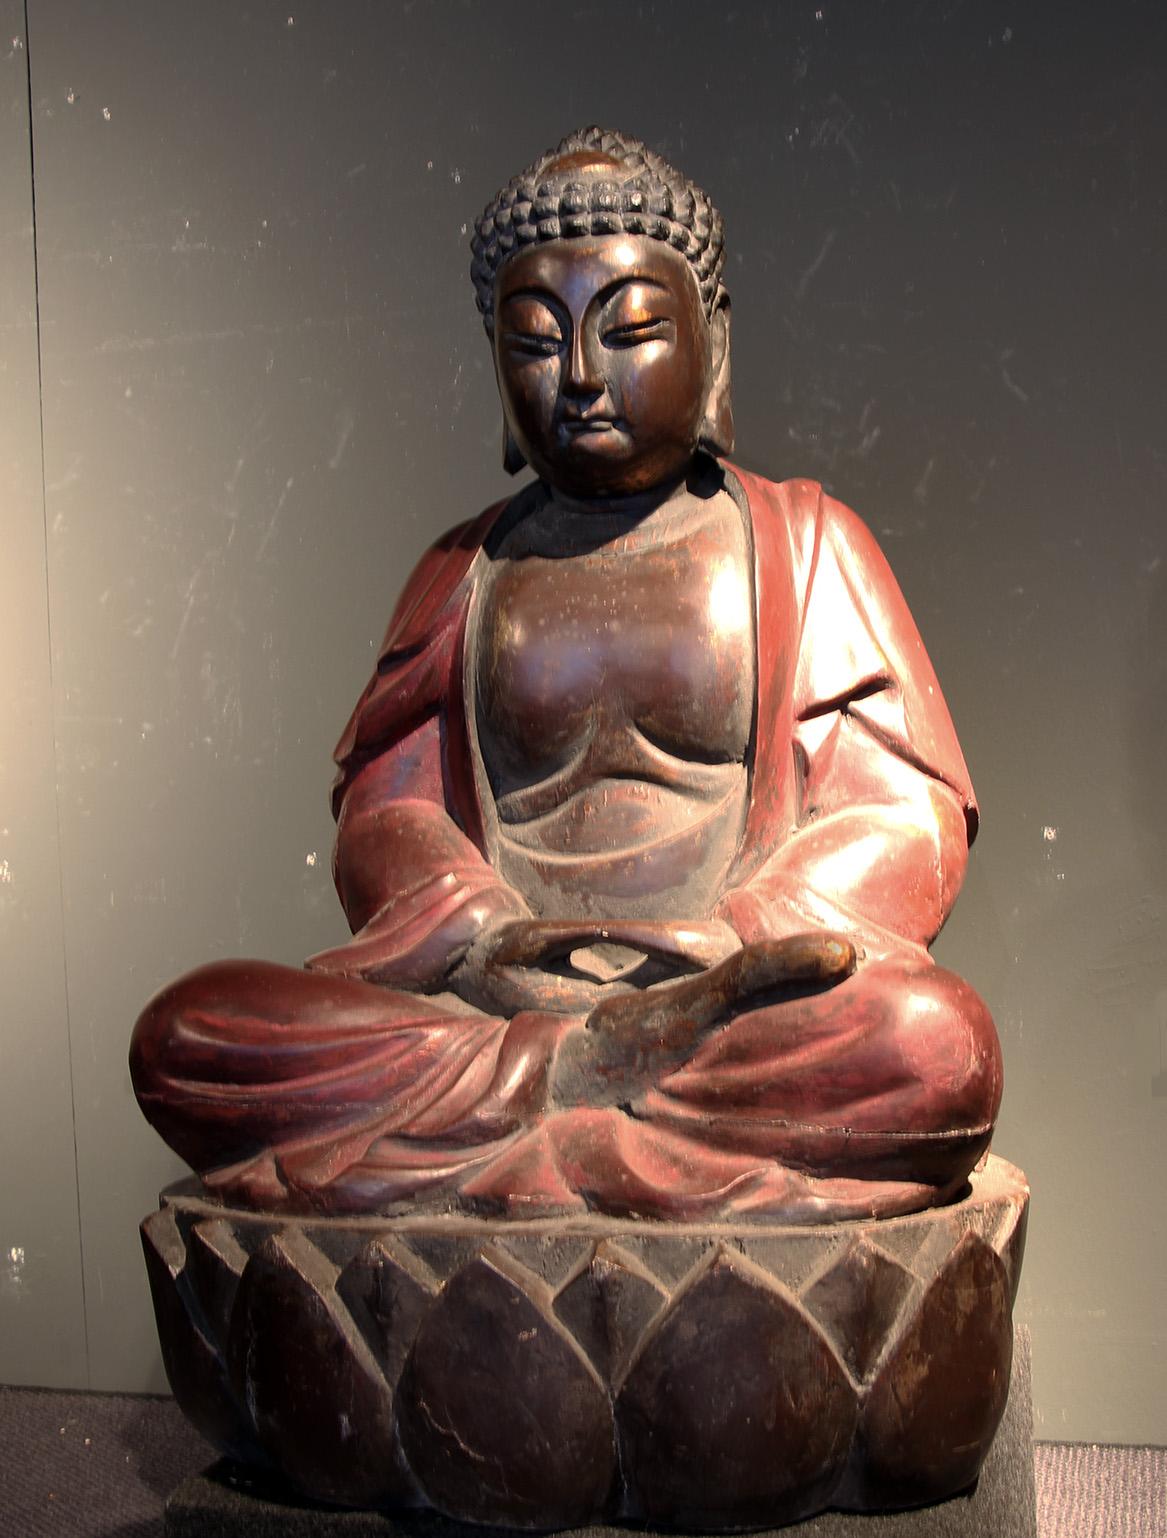 Grande scultura di un Buddha in legno scolpito e laccato in policromia di bella proporzione e colore.
Scultura riprodotta nel novecento con precisione e ottima qualità .
Lo stato di conservazione è molto buono.